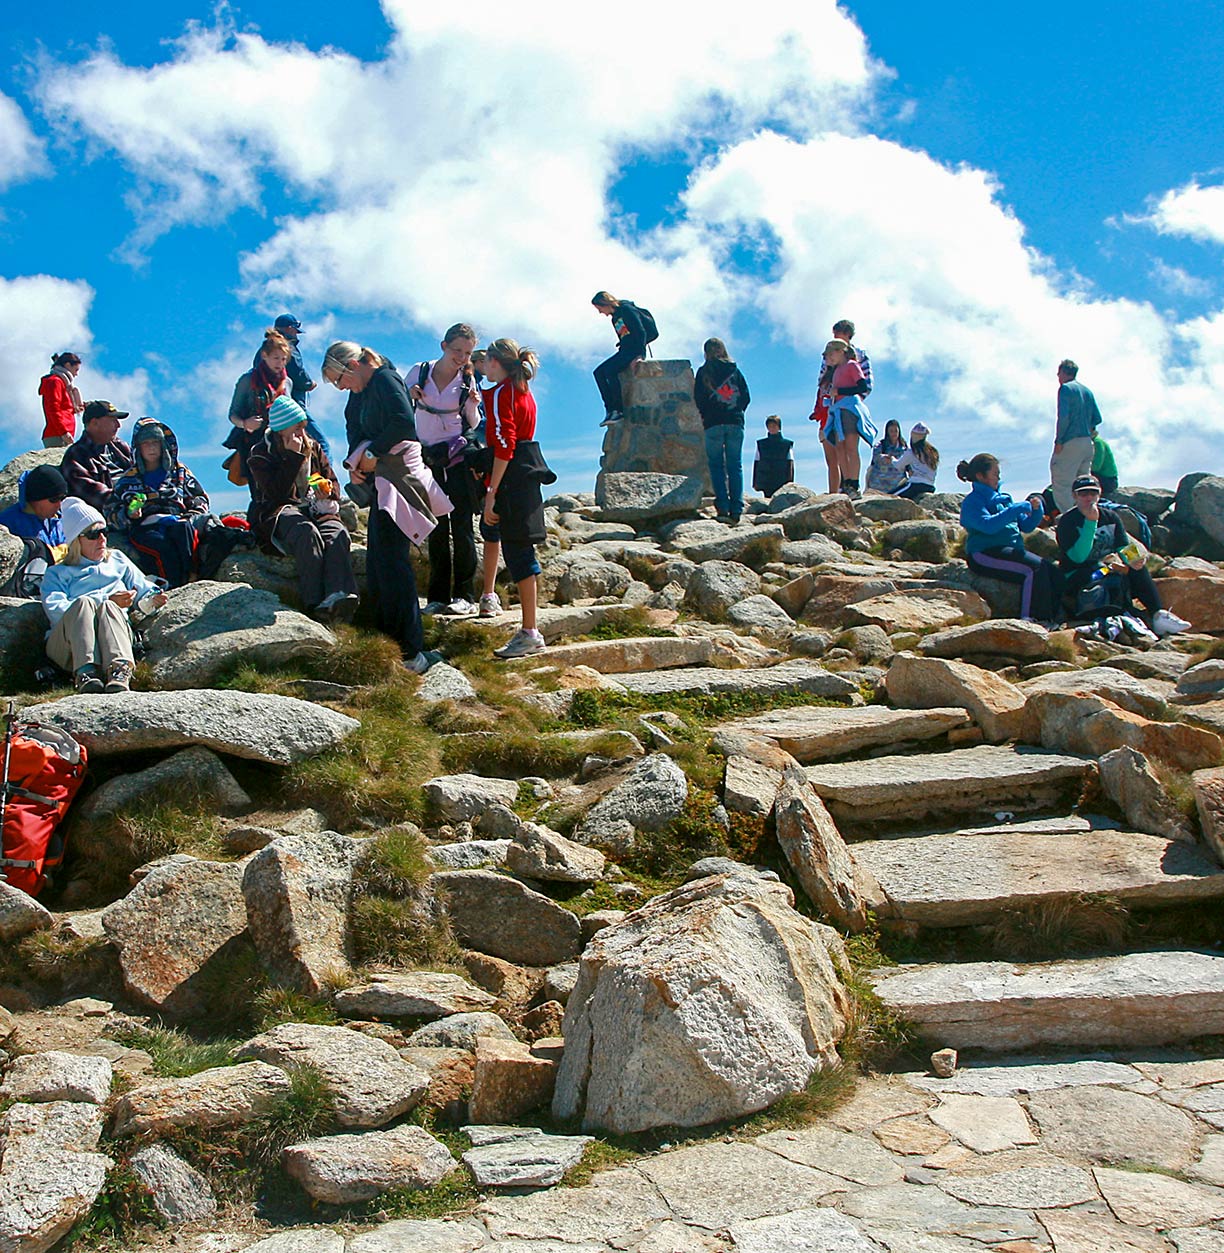 Tourists on the summit of Mount Kosciuszko, Australia